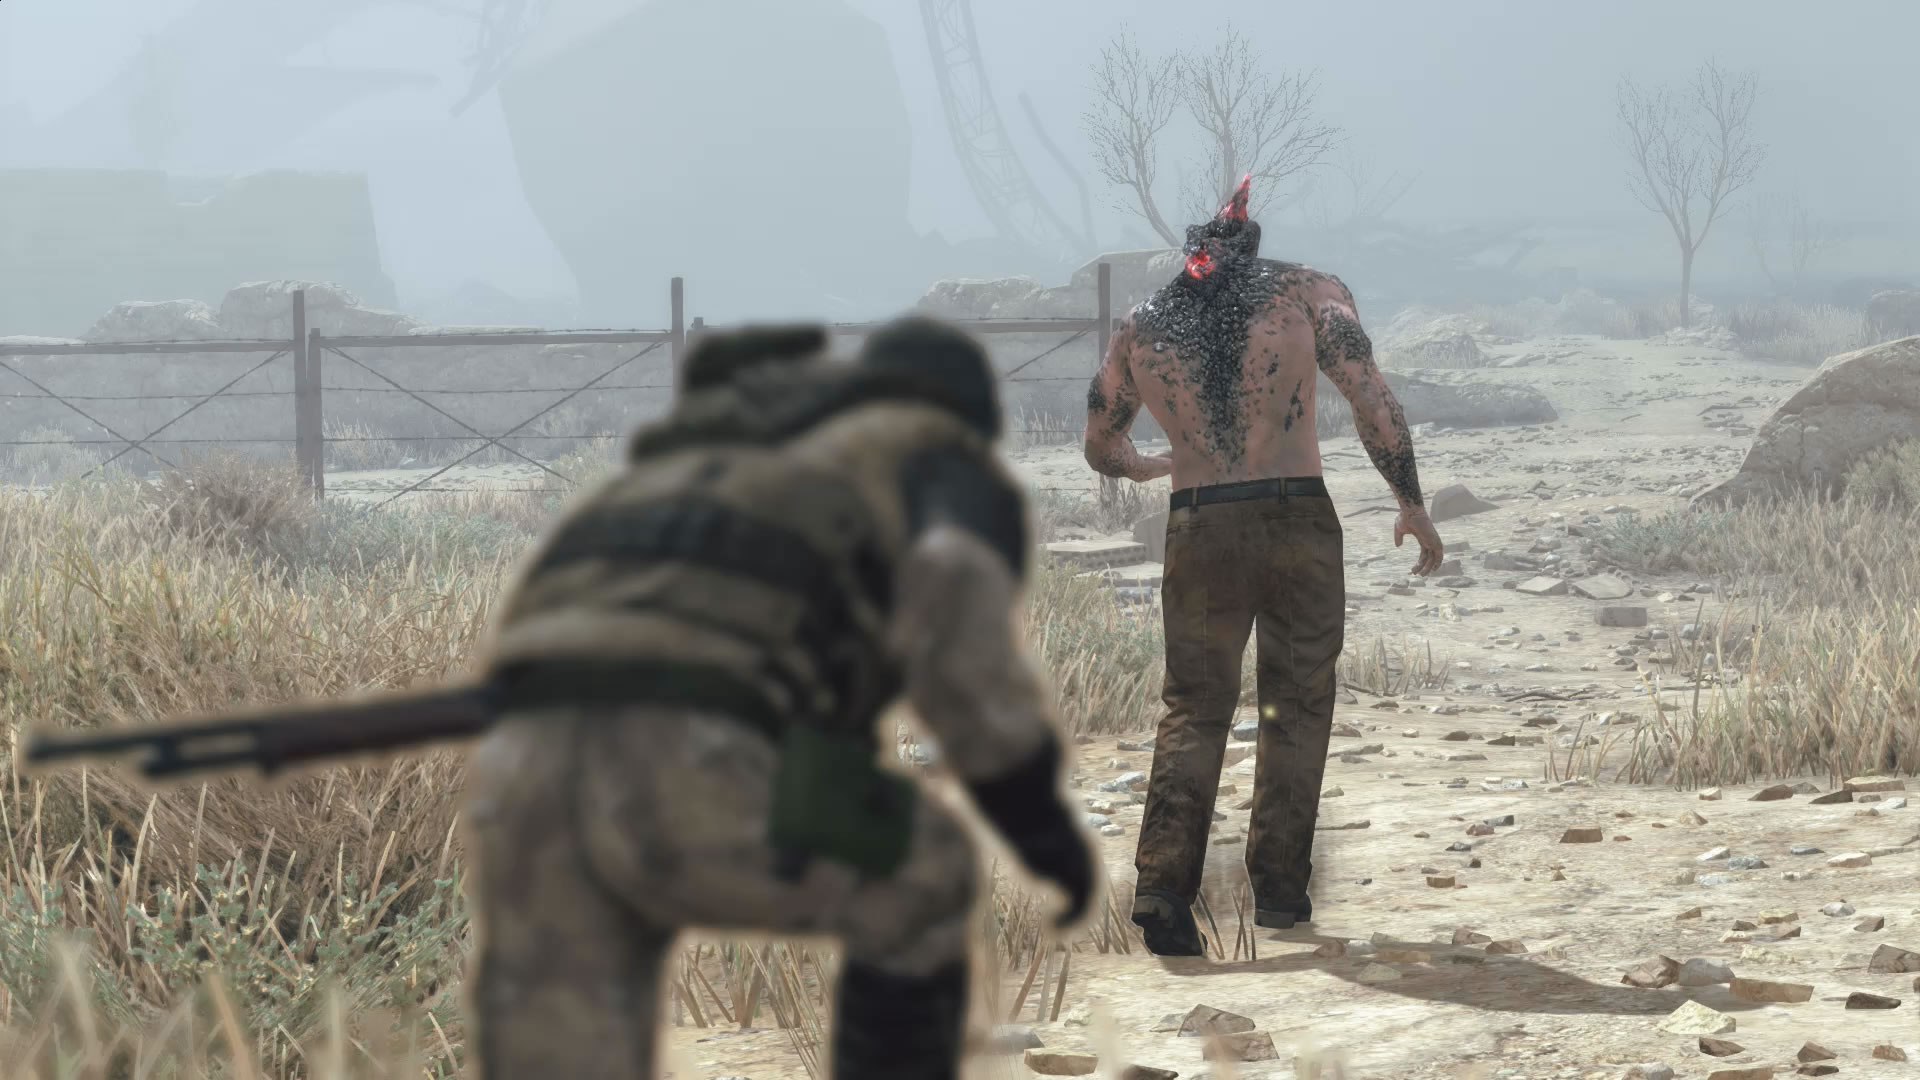 Image de Metal Gear Survive